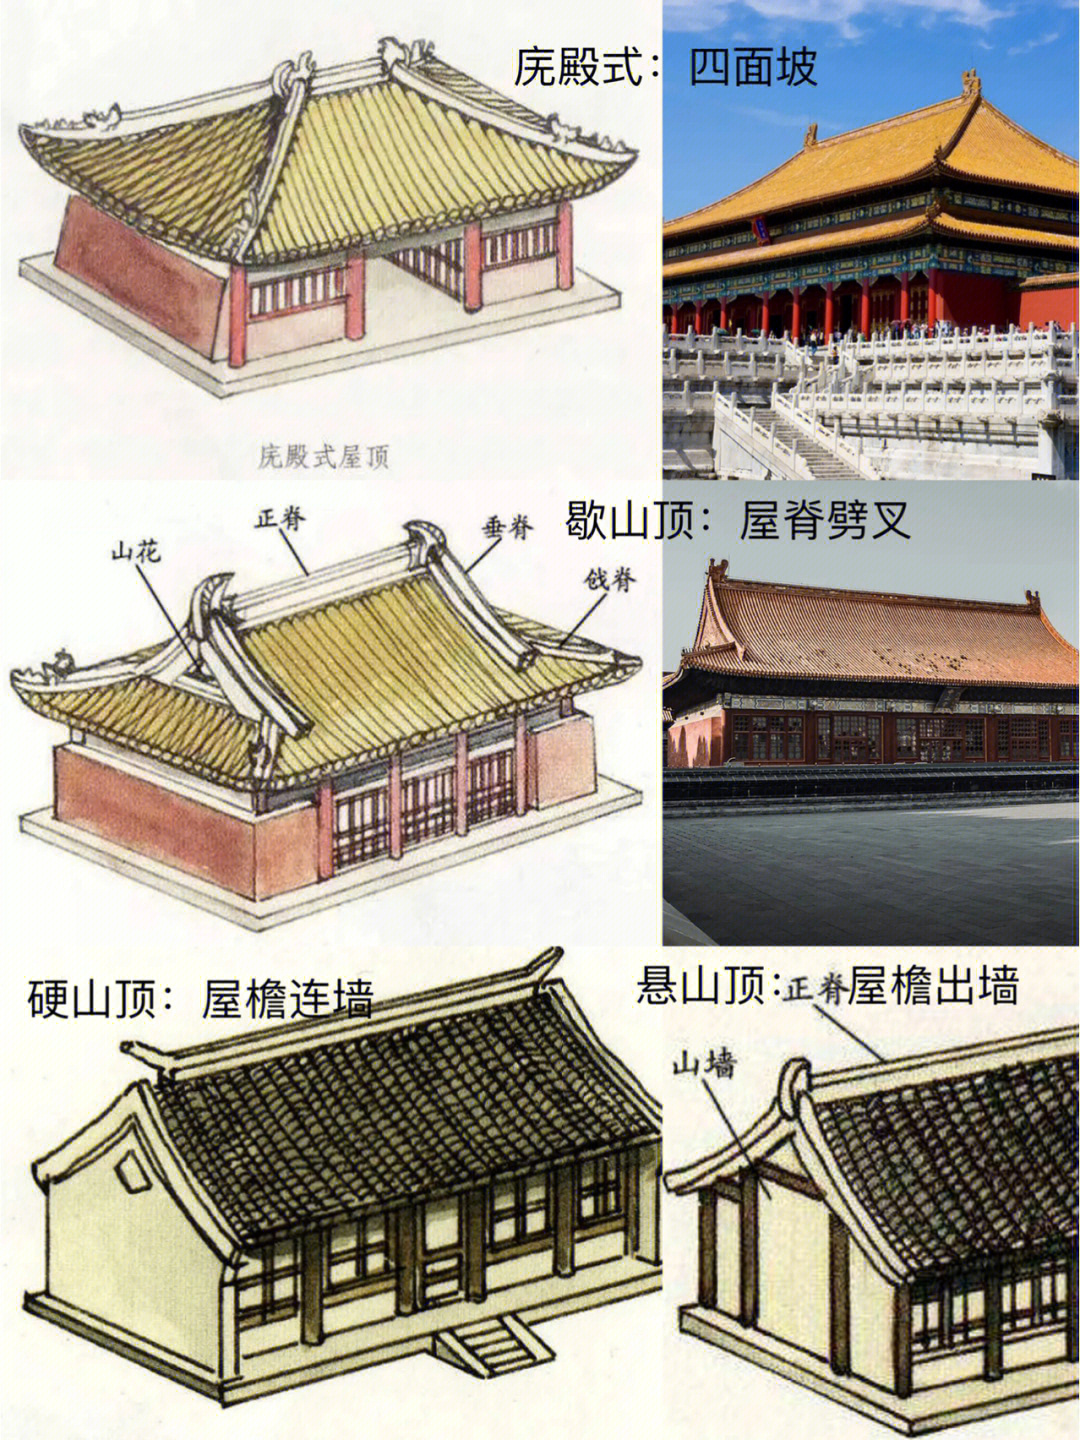 在中国古建筑艺术中,屋顶的形制大有讲究